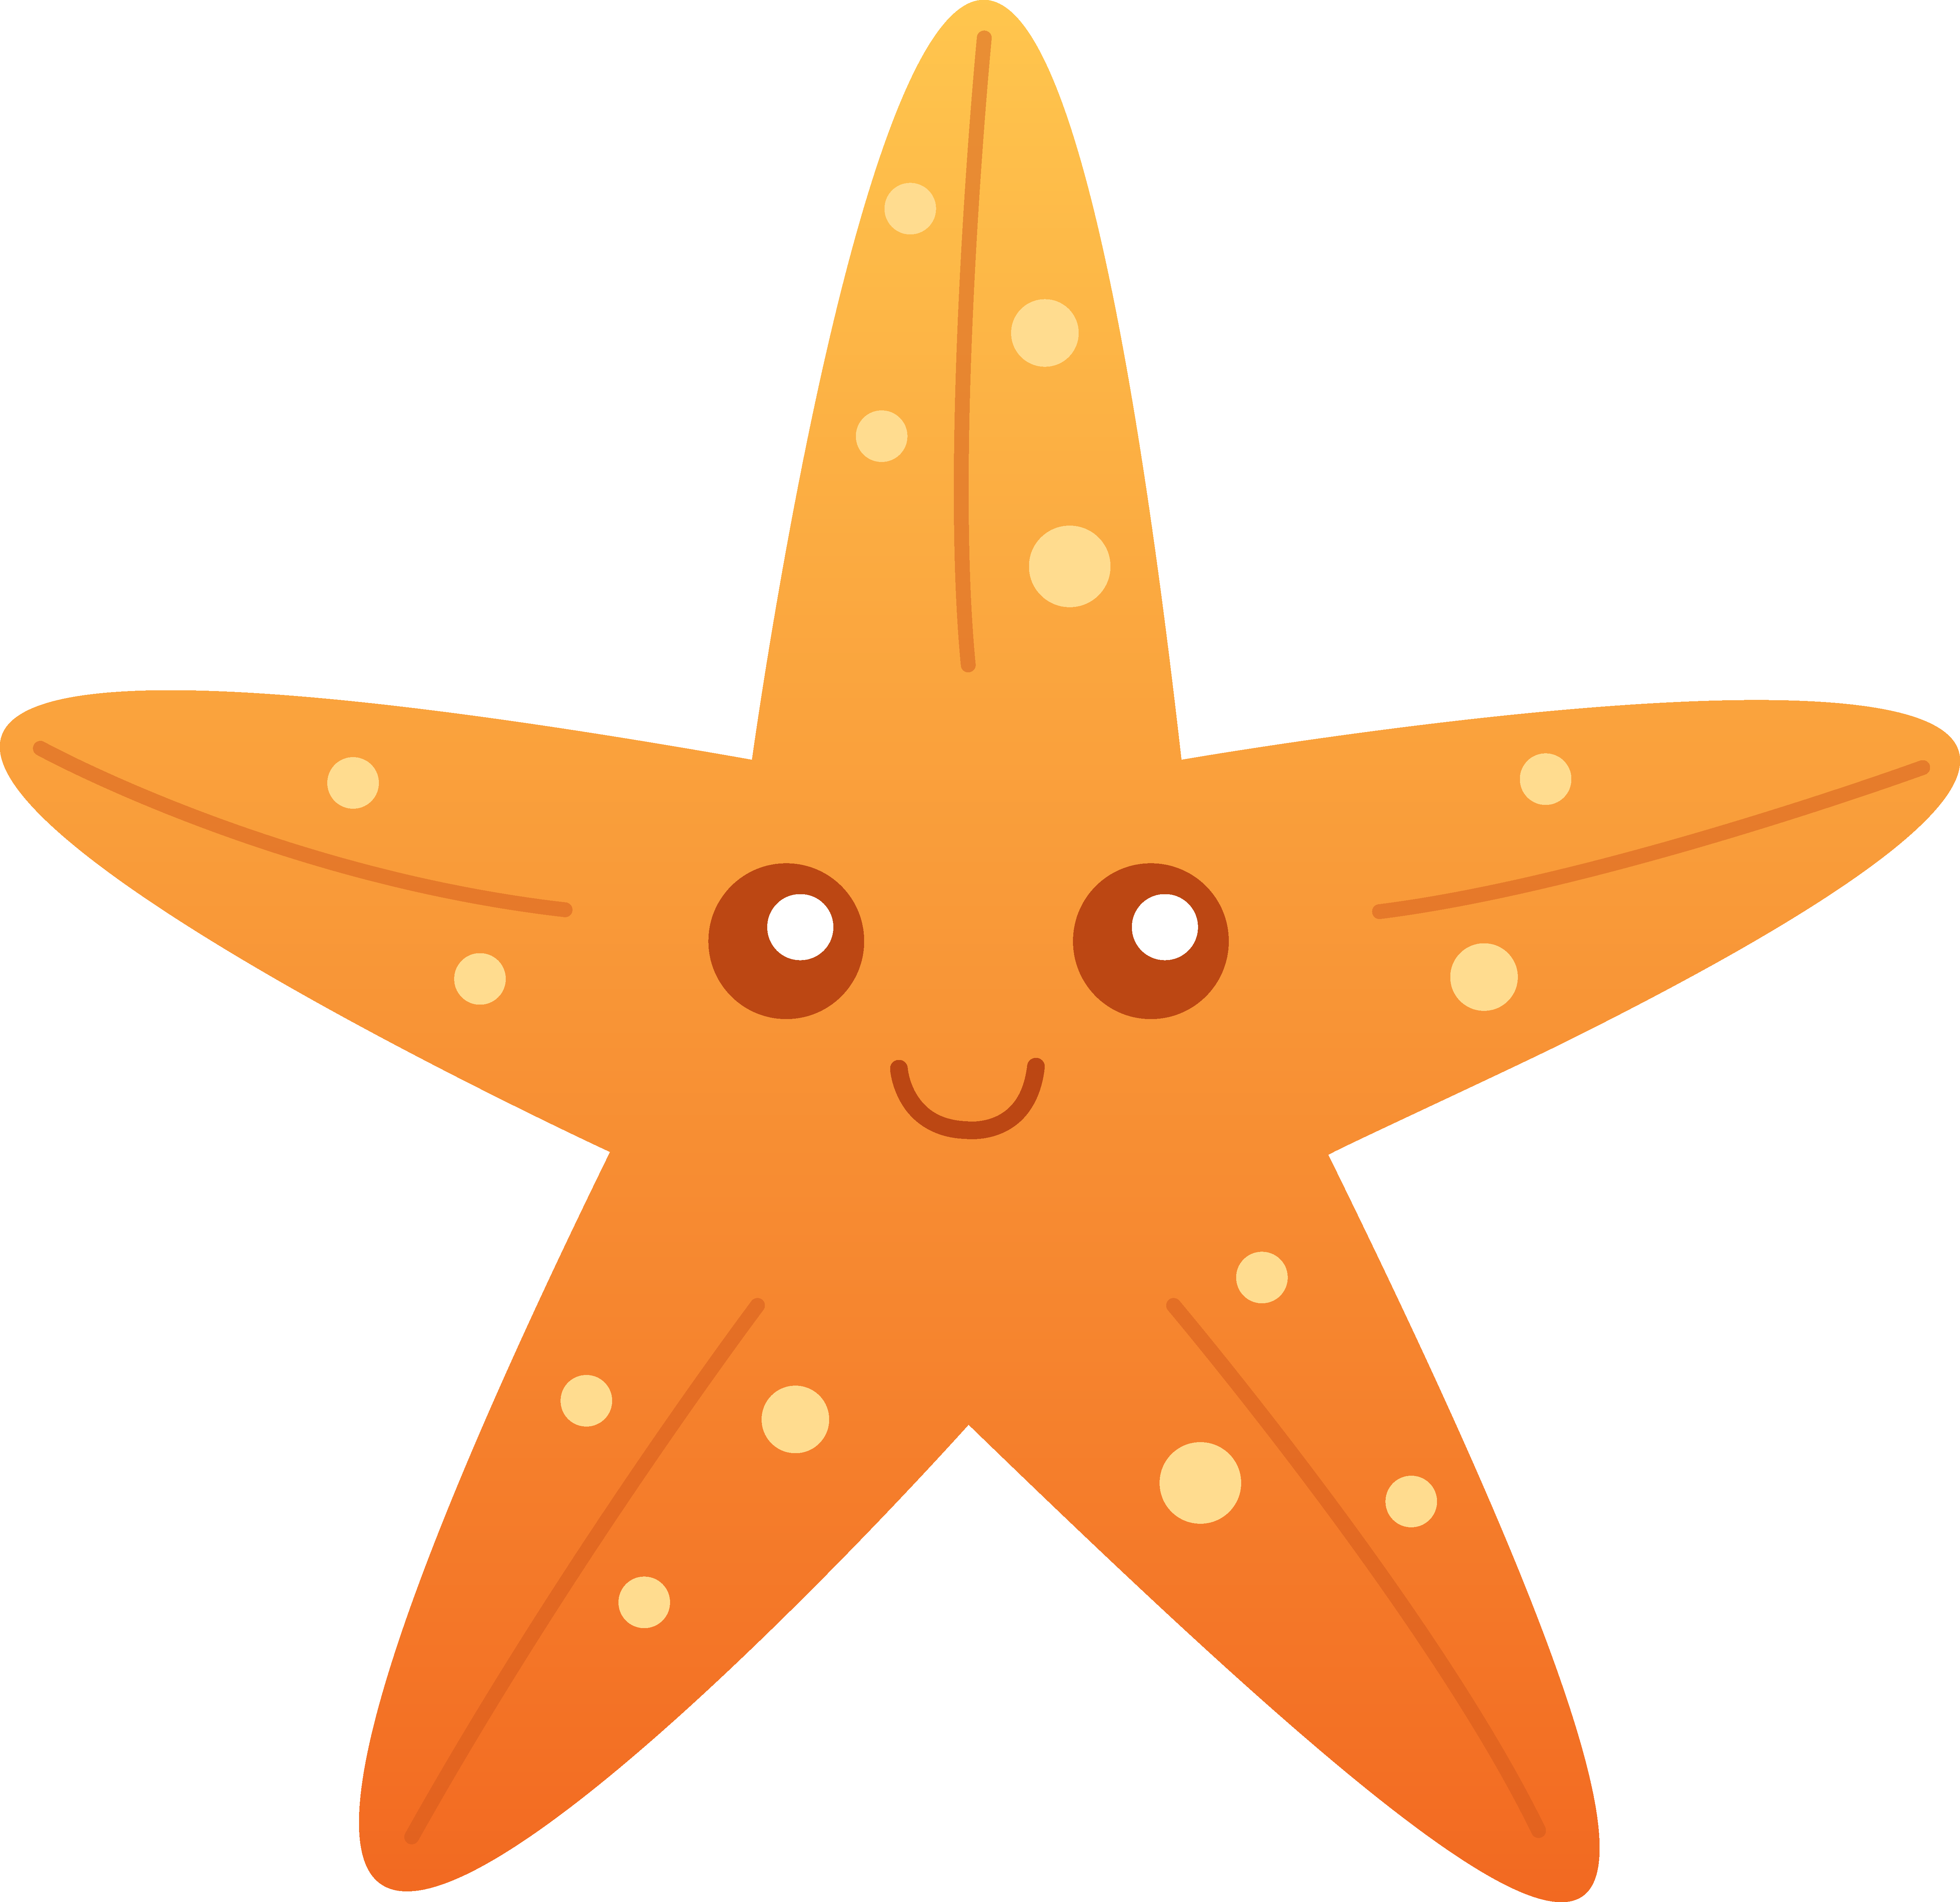 A sea star Starfish Cuteness Free content Clip art